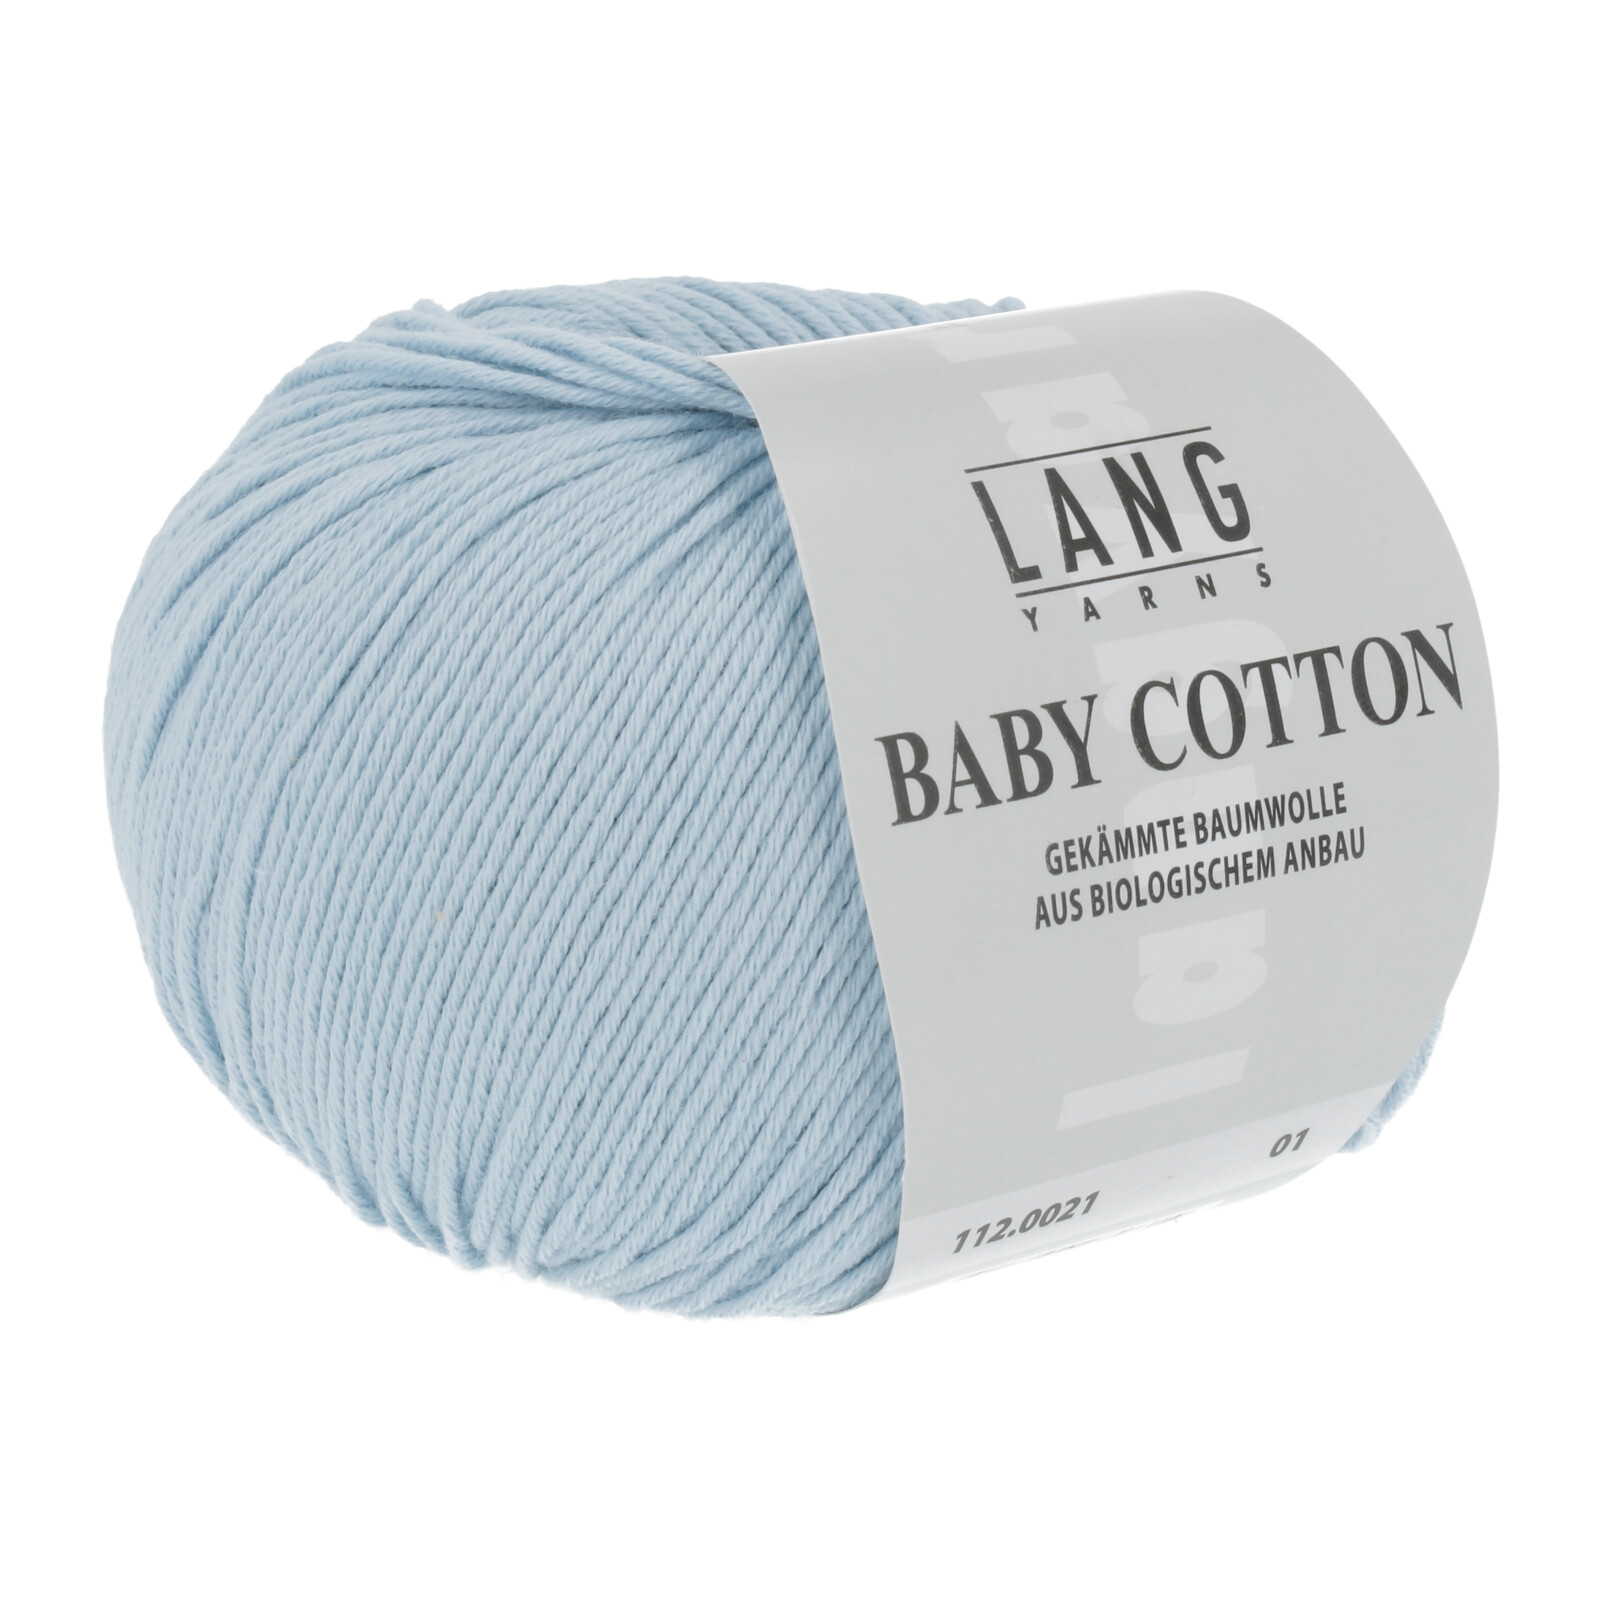 LANG Baby Cotton